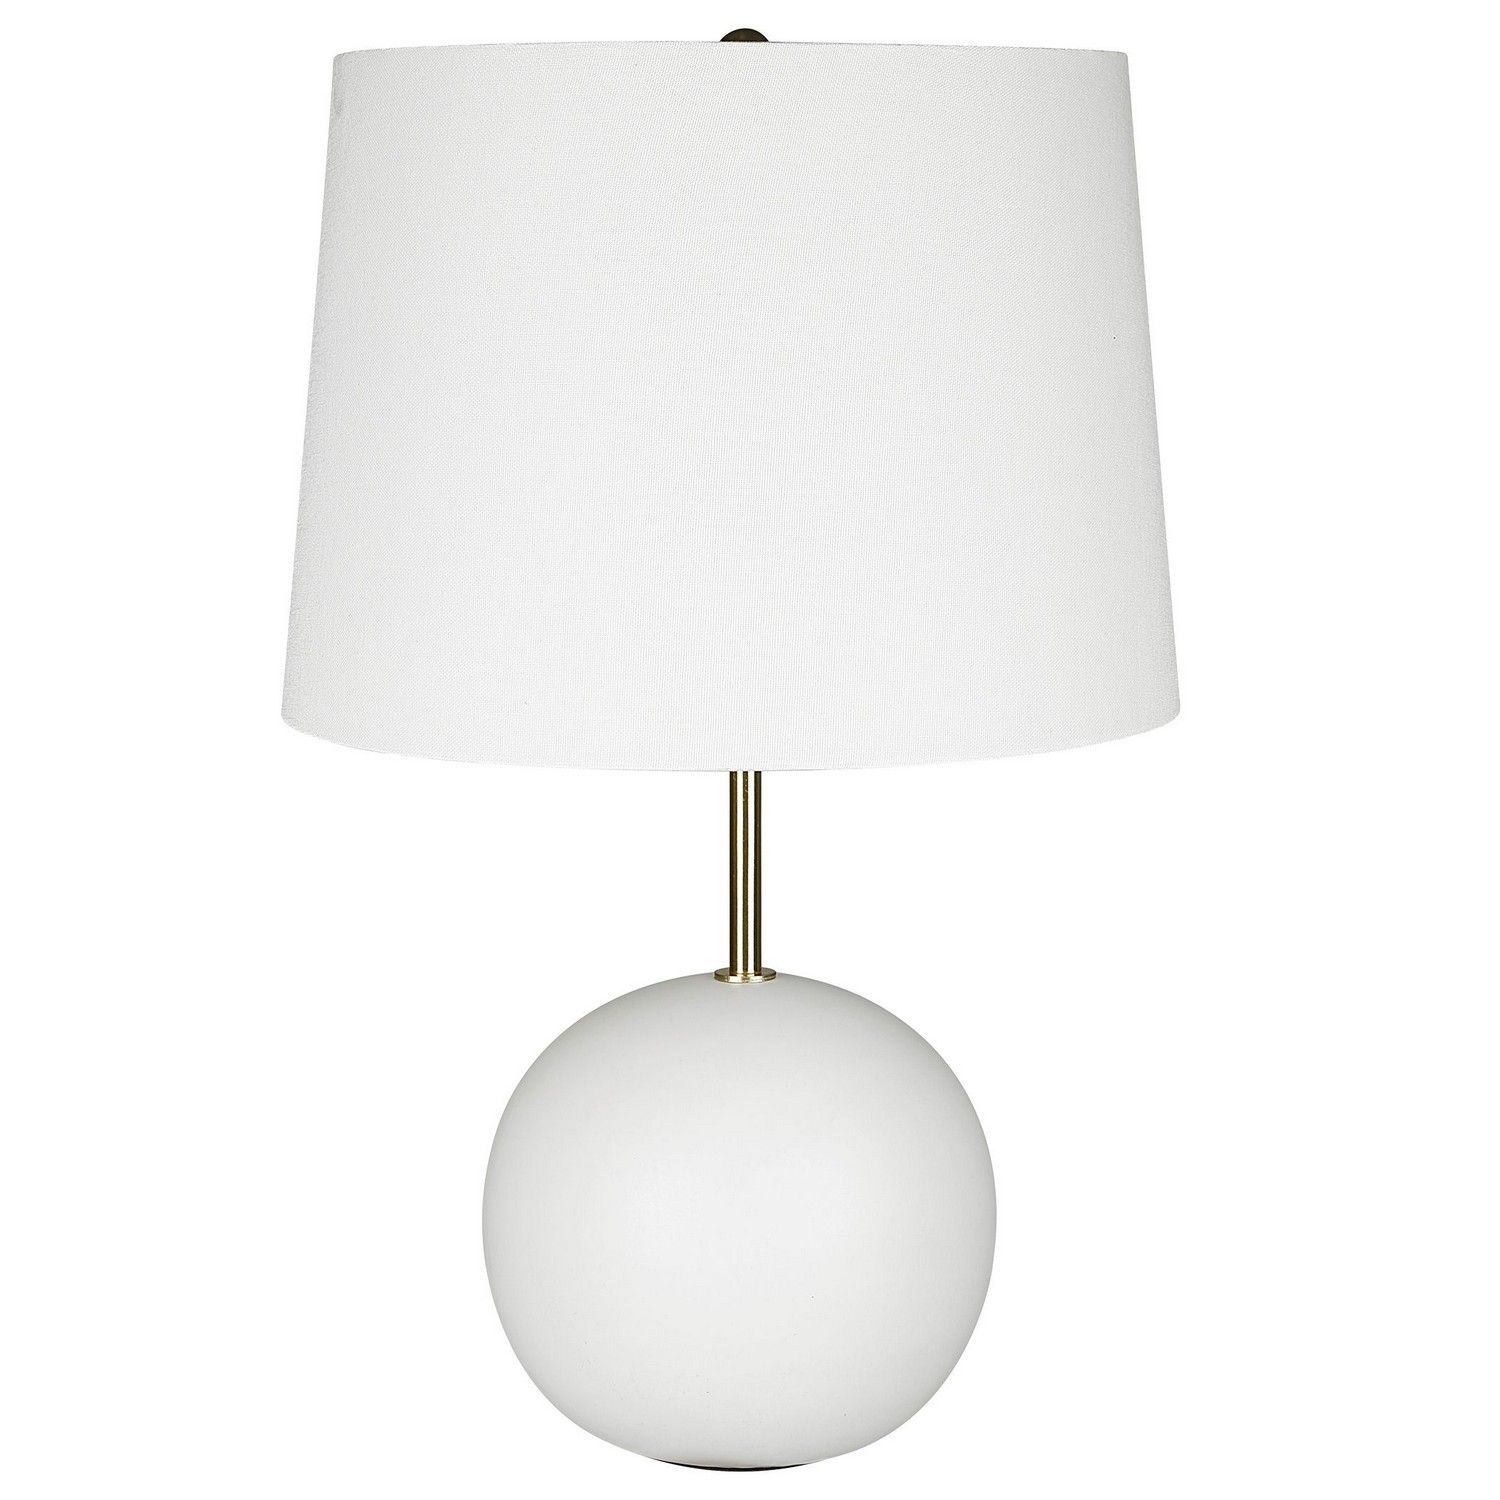 ABC Accent ABC-26088-1 Table Lamp - White Ceramic